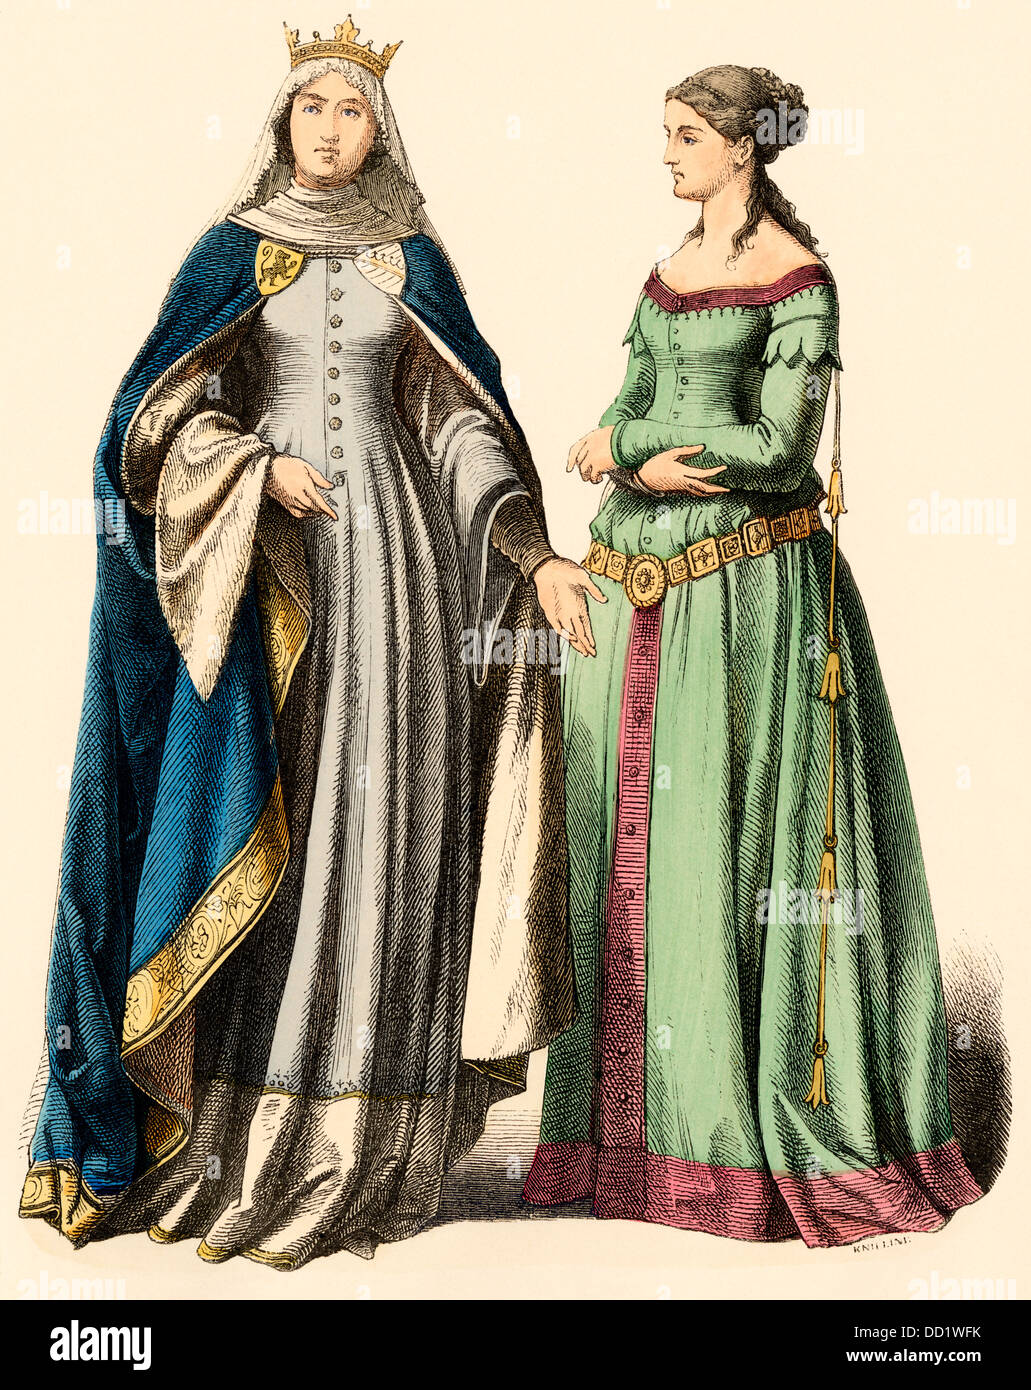 Princesse allemande et une dame, 1300s à la main, imprimer Banque D'Images